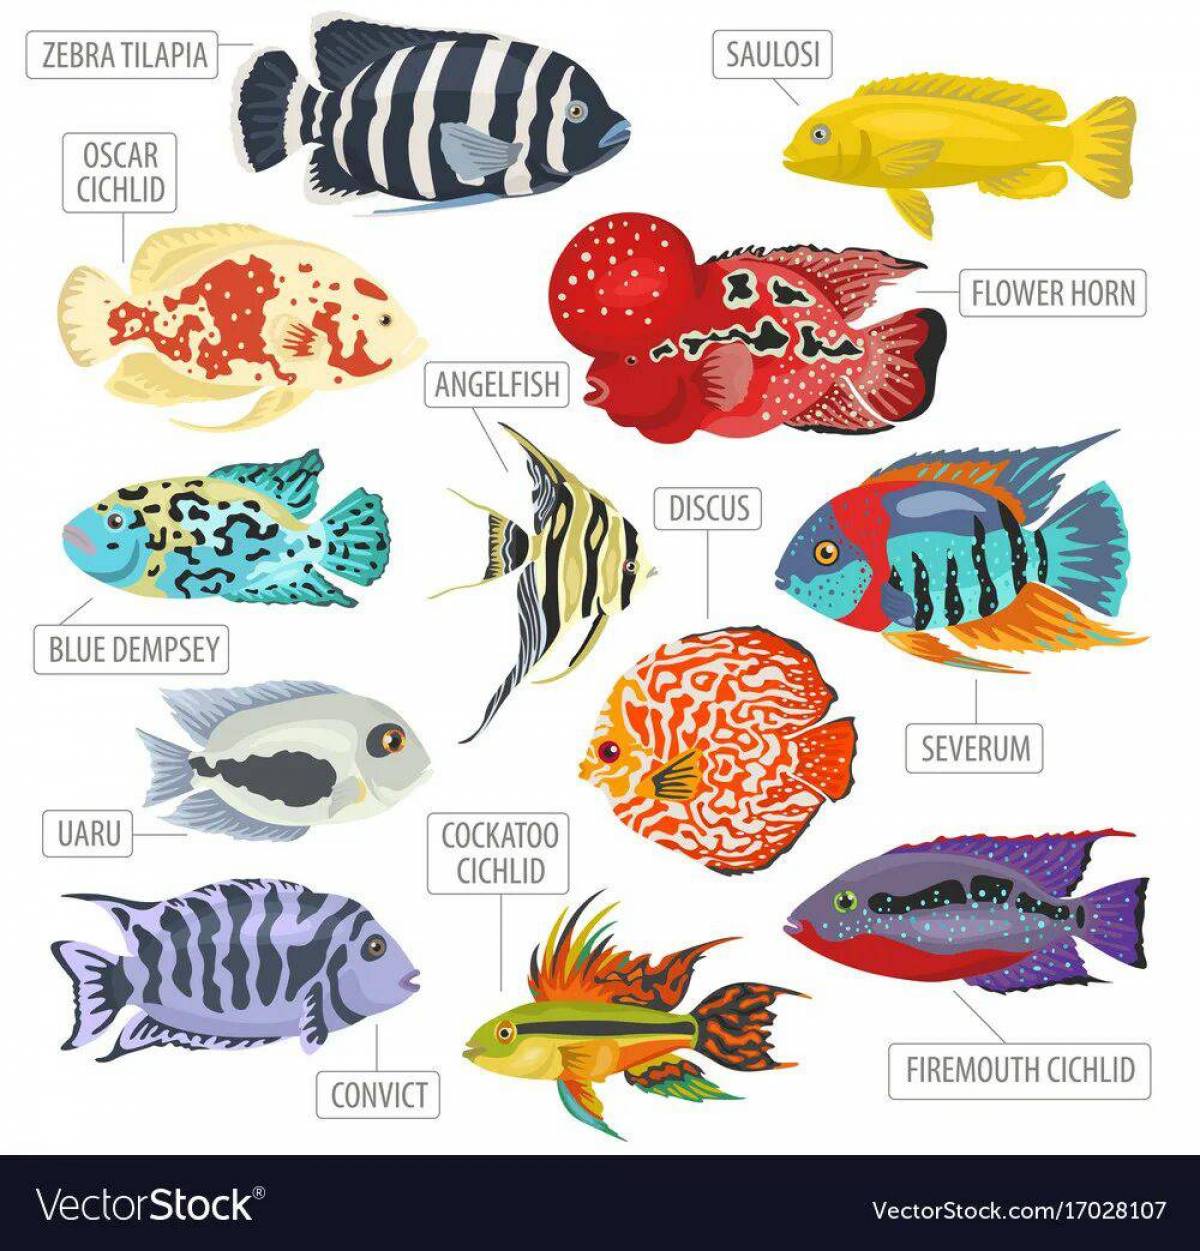 Аквариумные рыбки с названиями для детей #28